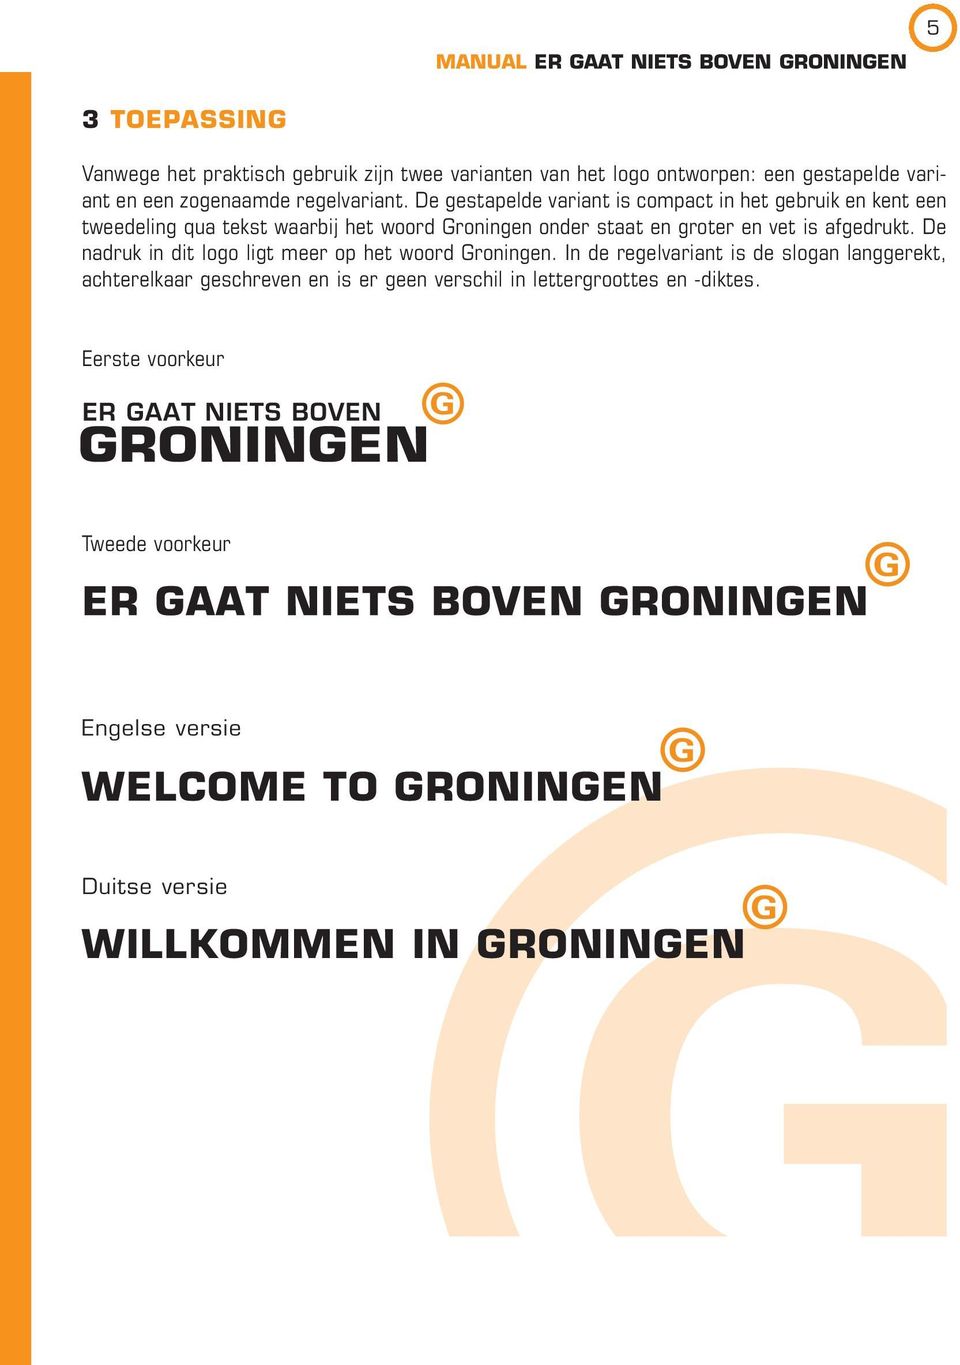 afgedrukt. De nadruk in dit logo ligt meer op het woord Groningen.